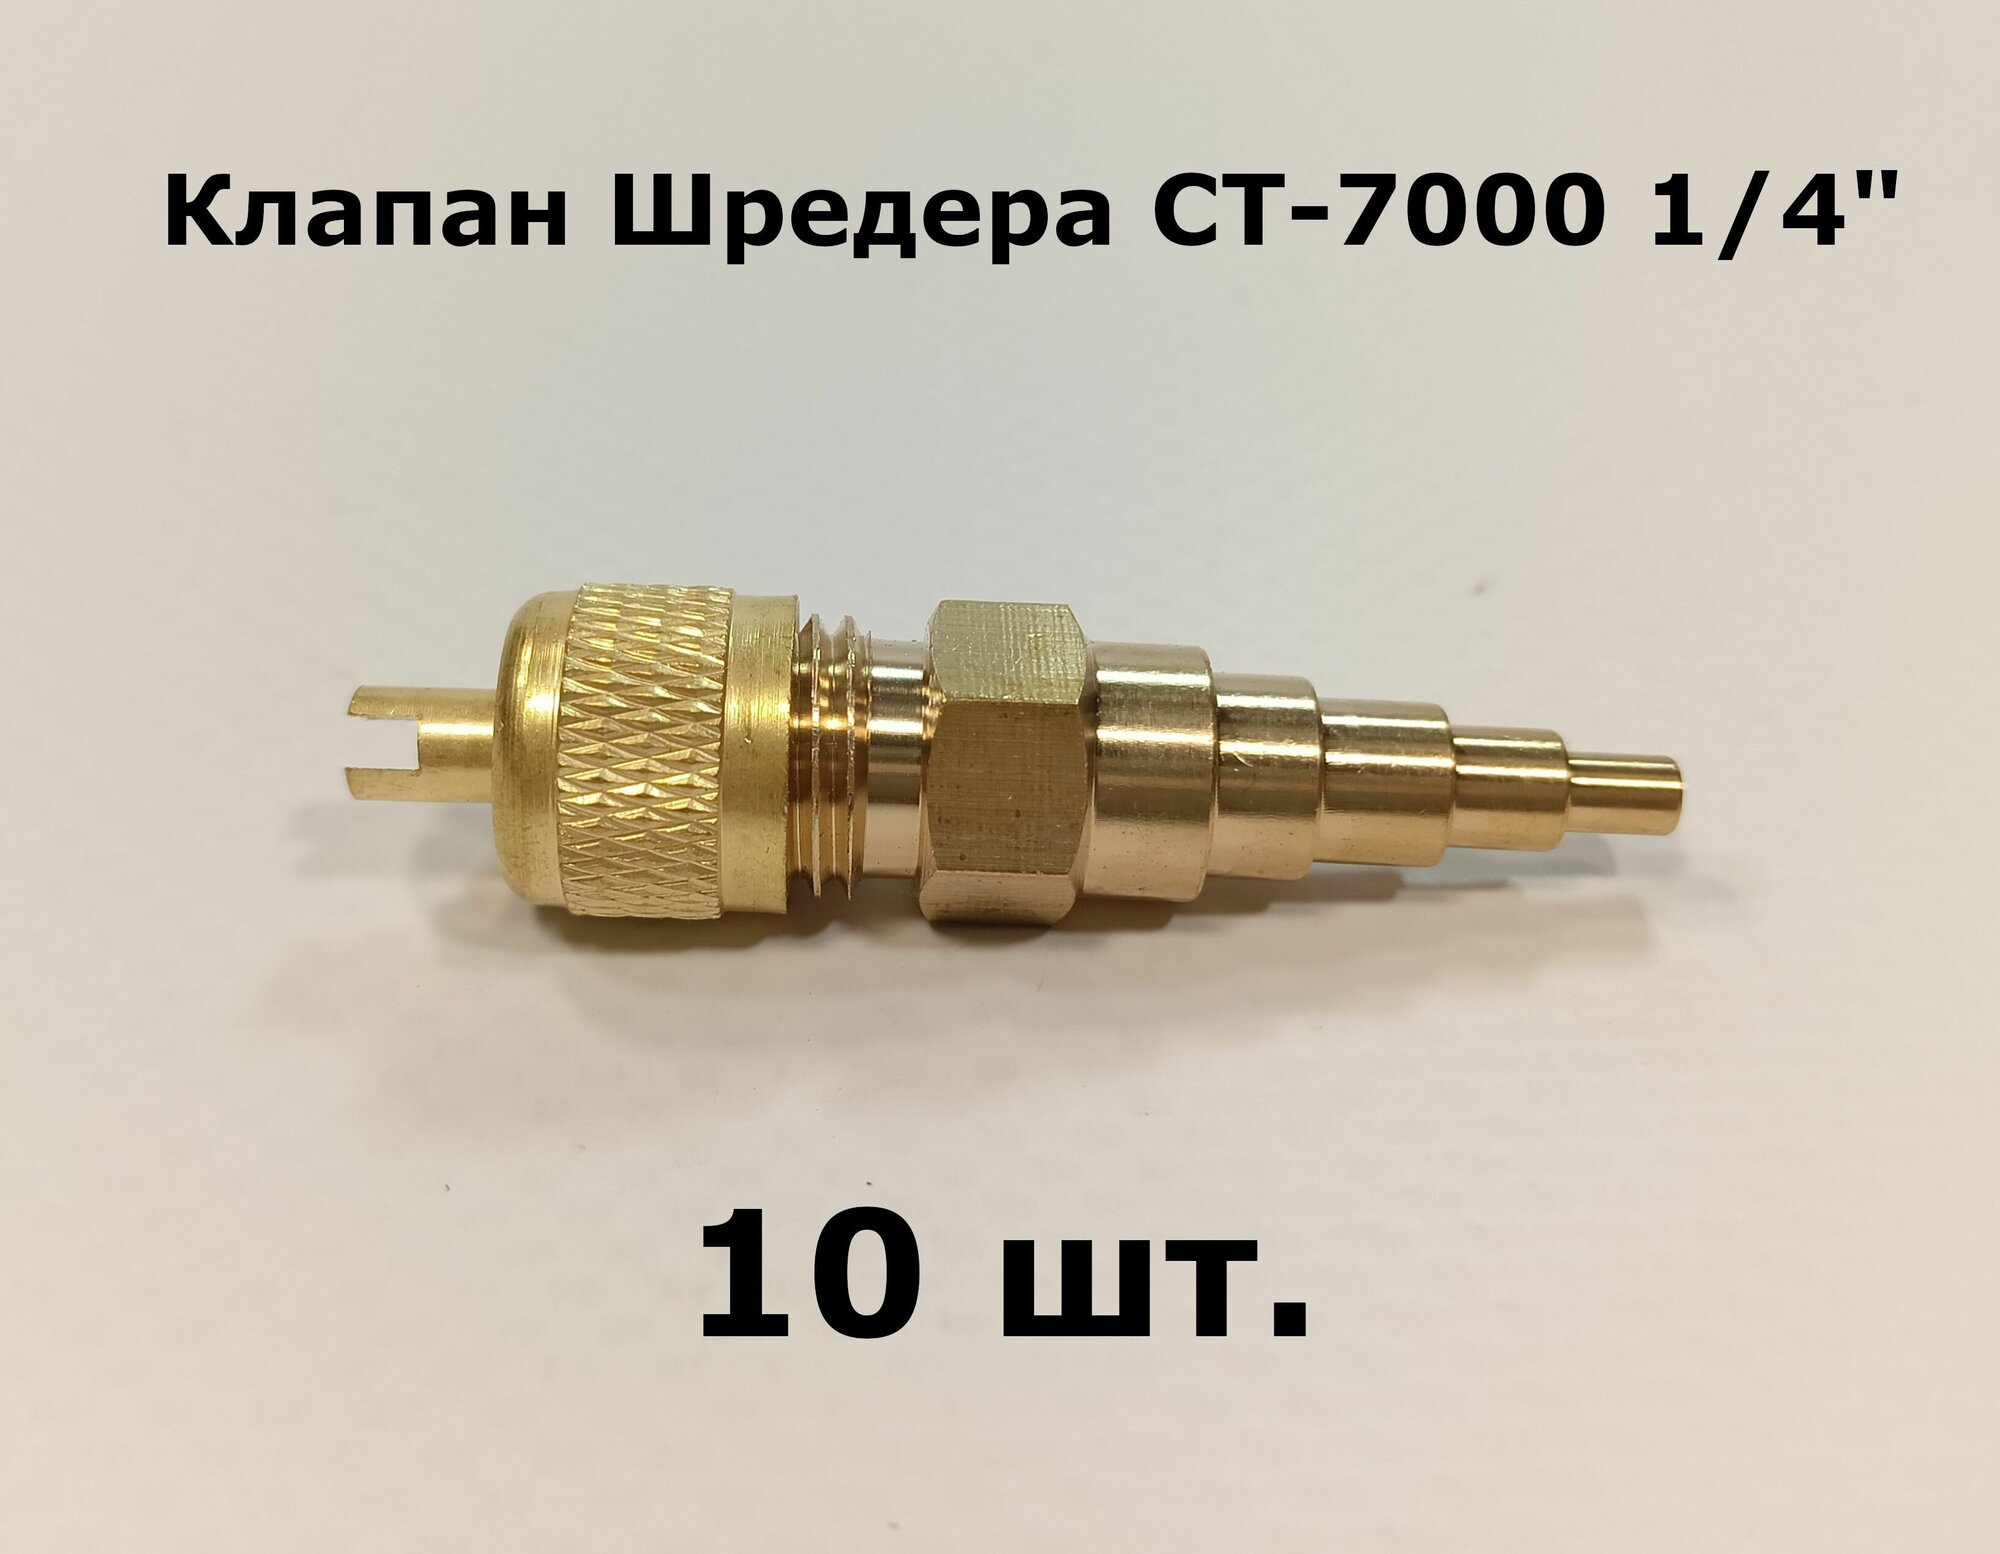 Клапаны Шредера СТ-7000 1/4" универсальные - комплект 10 штук